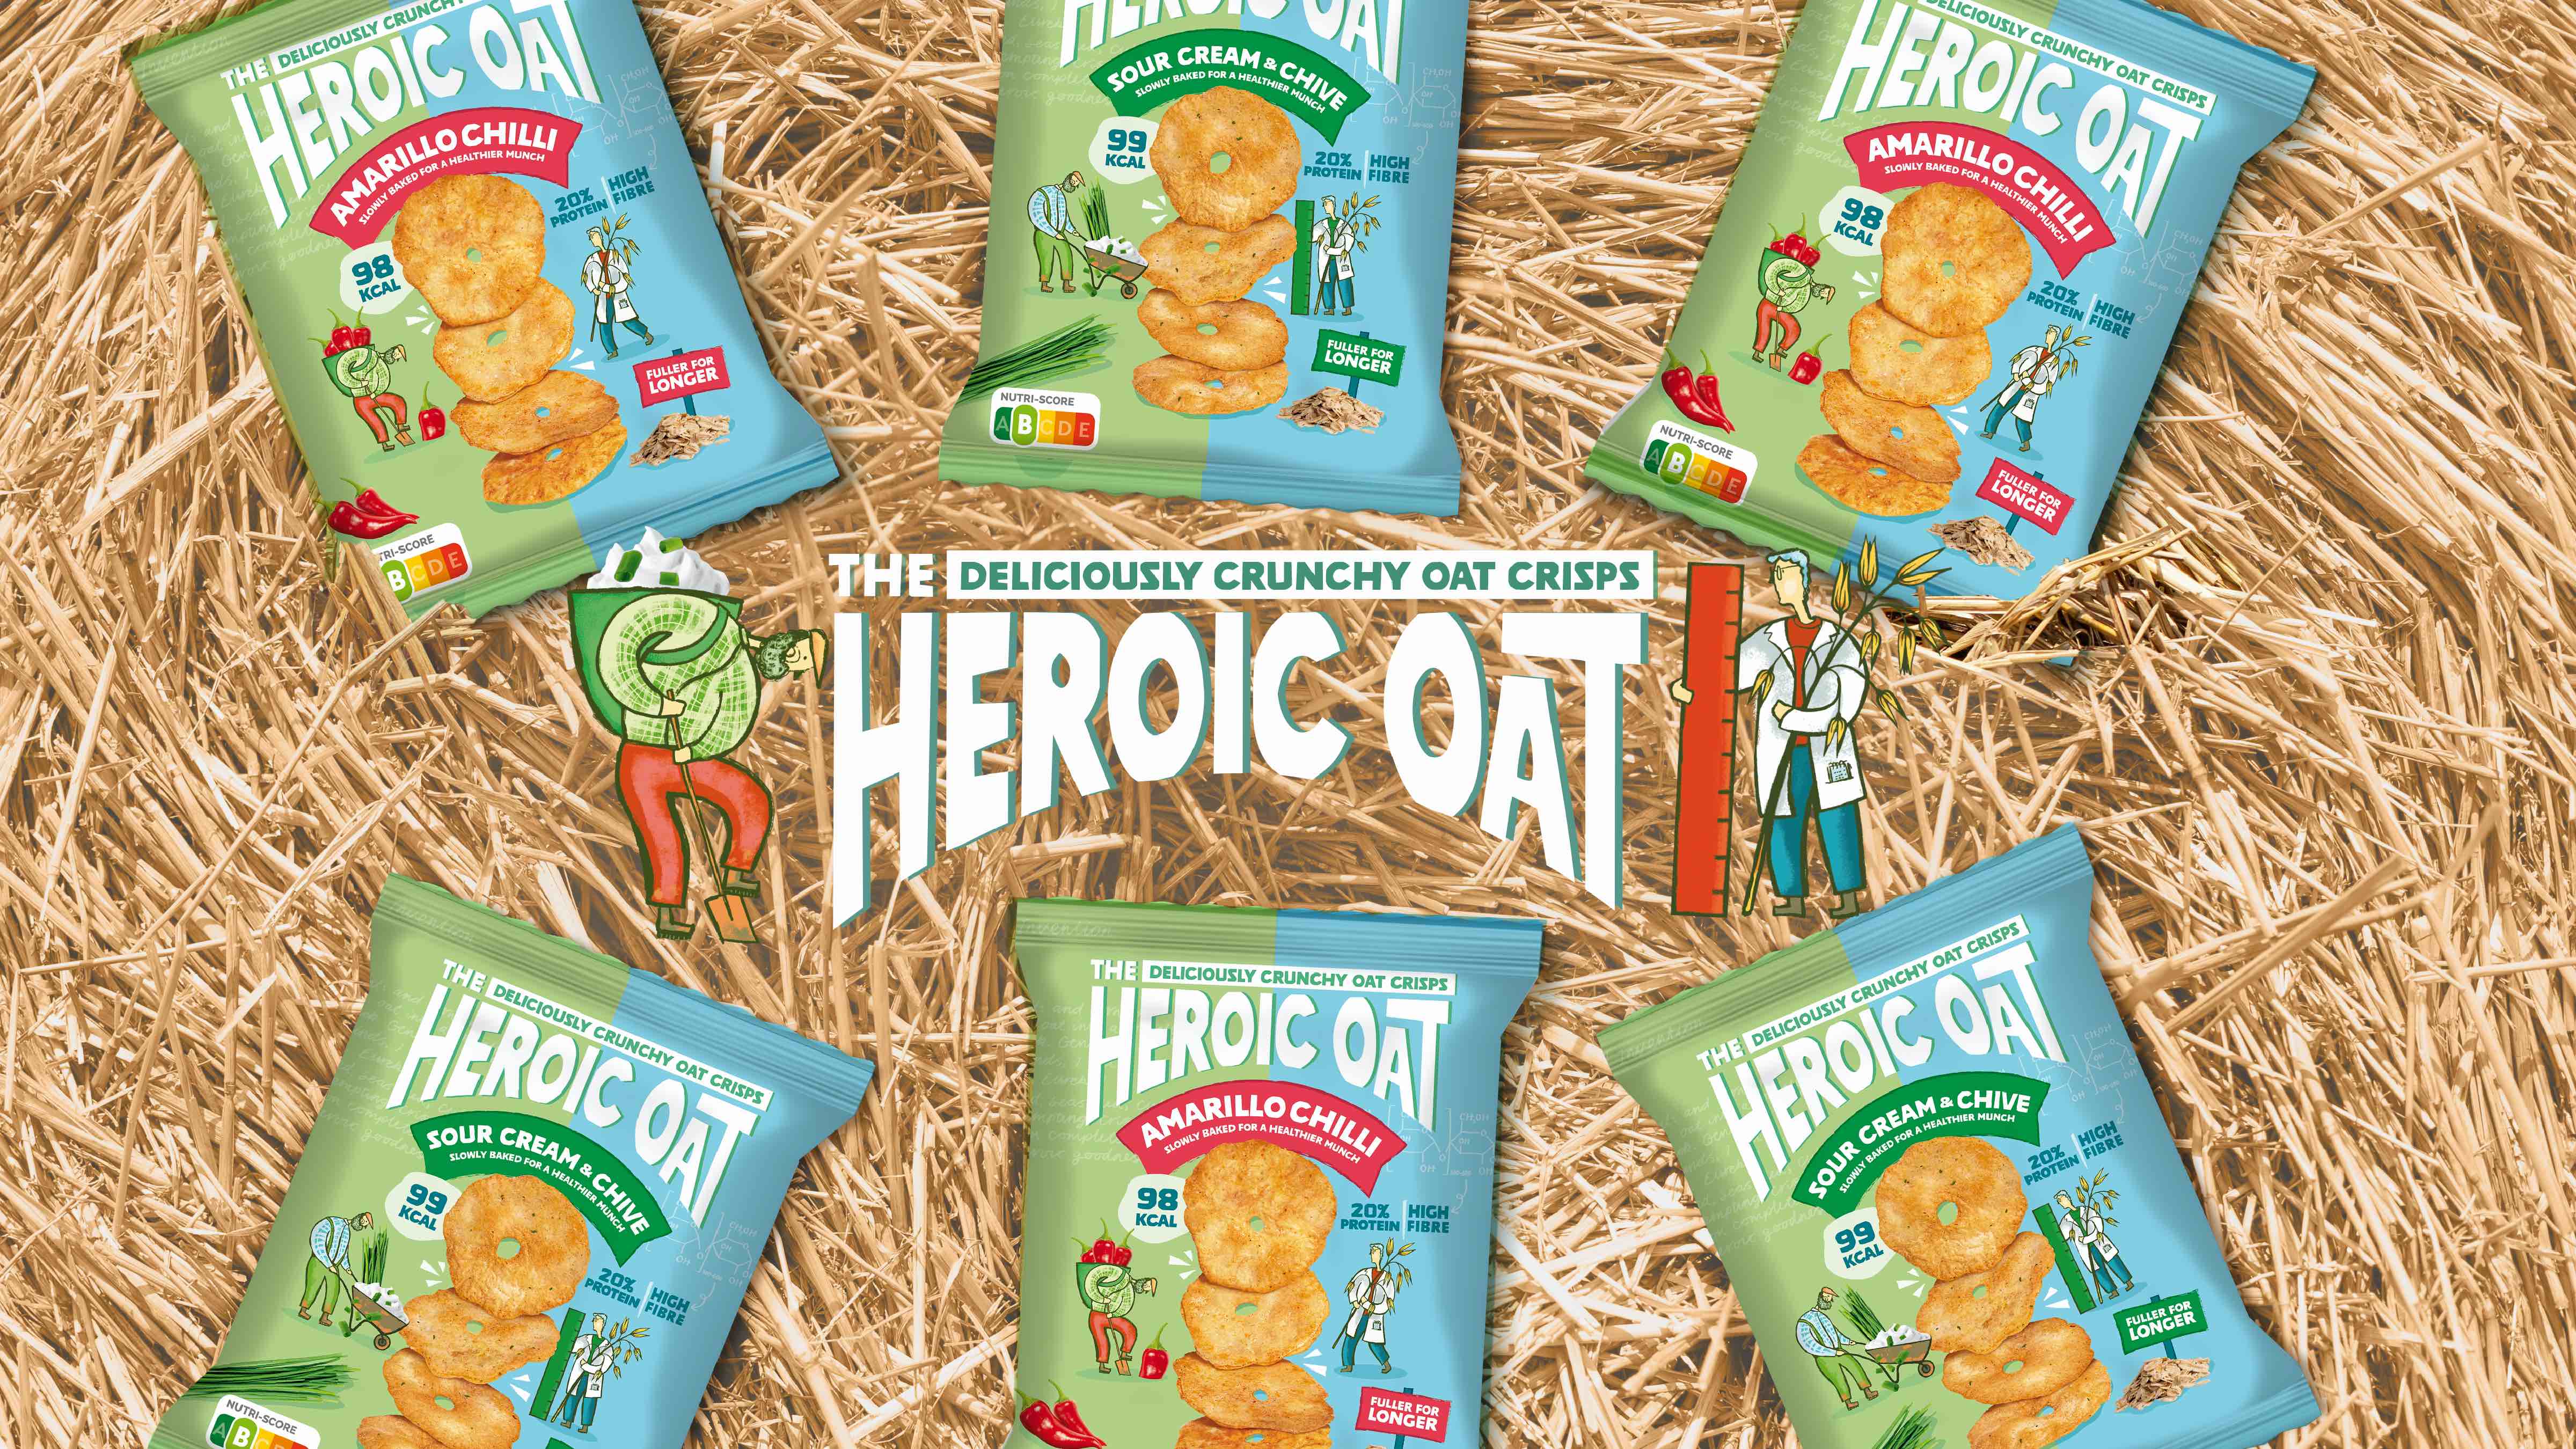 Heroic Oat – Revolutionary Oat-Based Snacks with Playful Brand Design